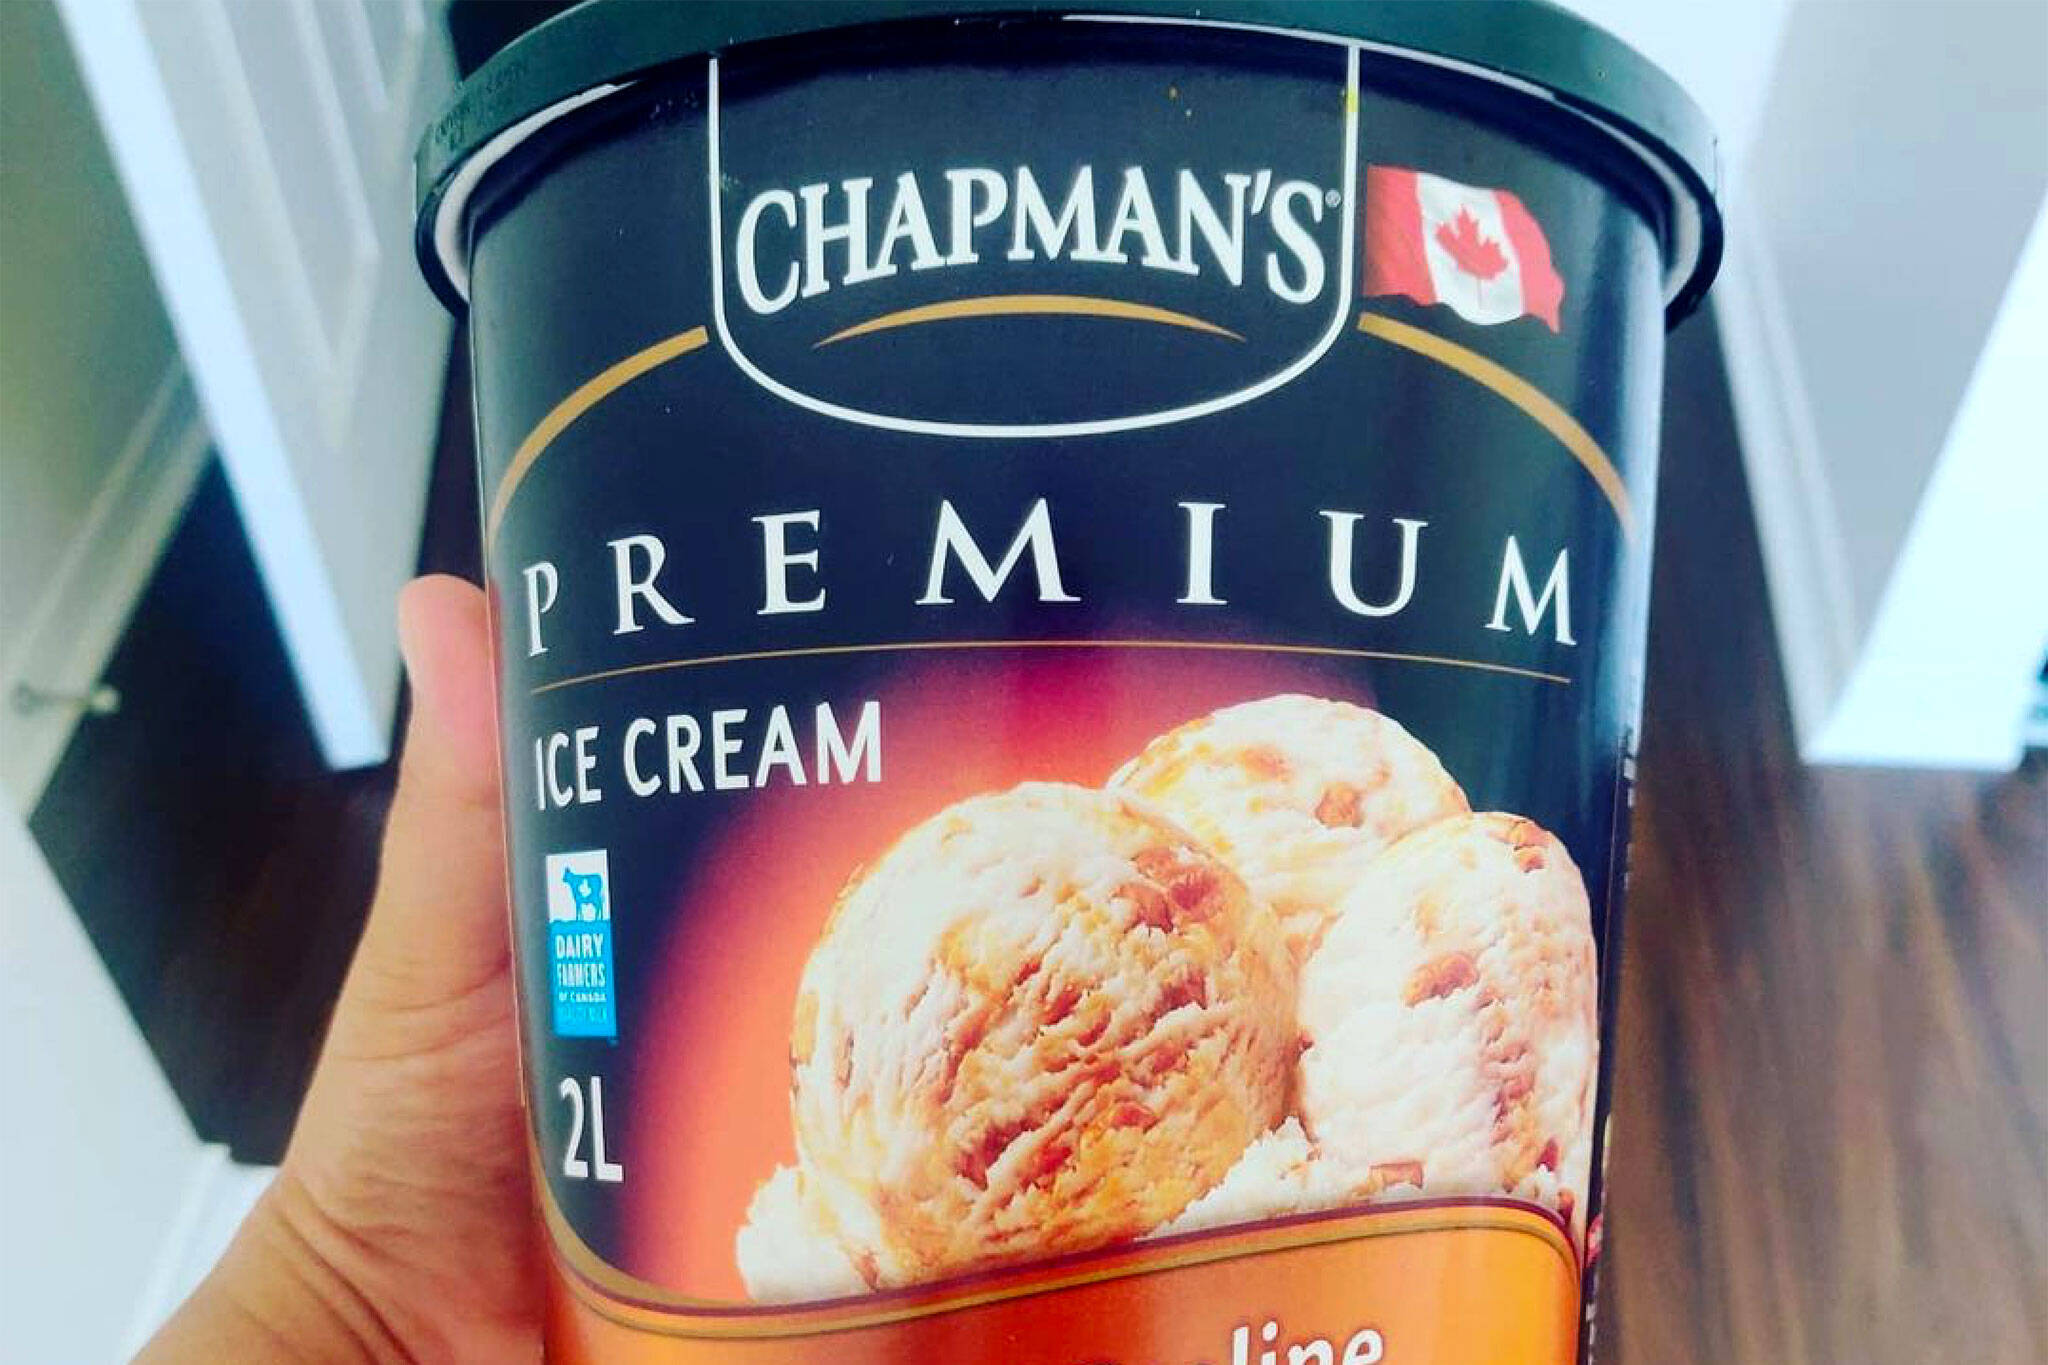 查普曼冰淇淋抵制